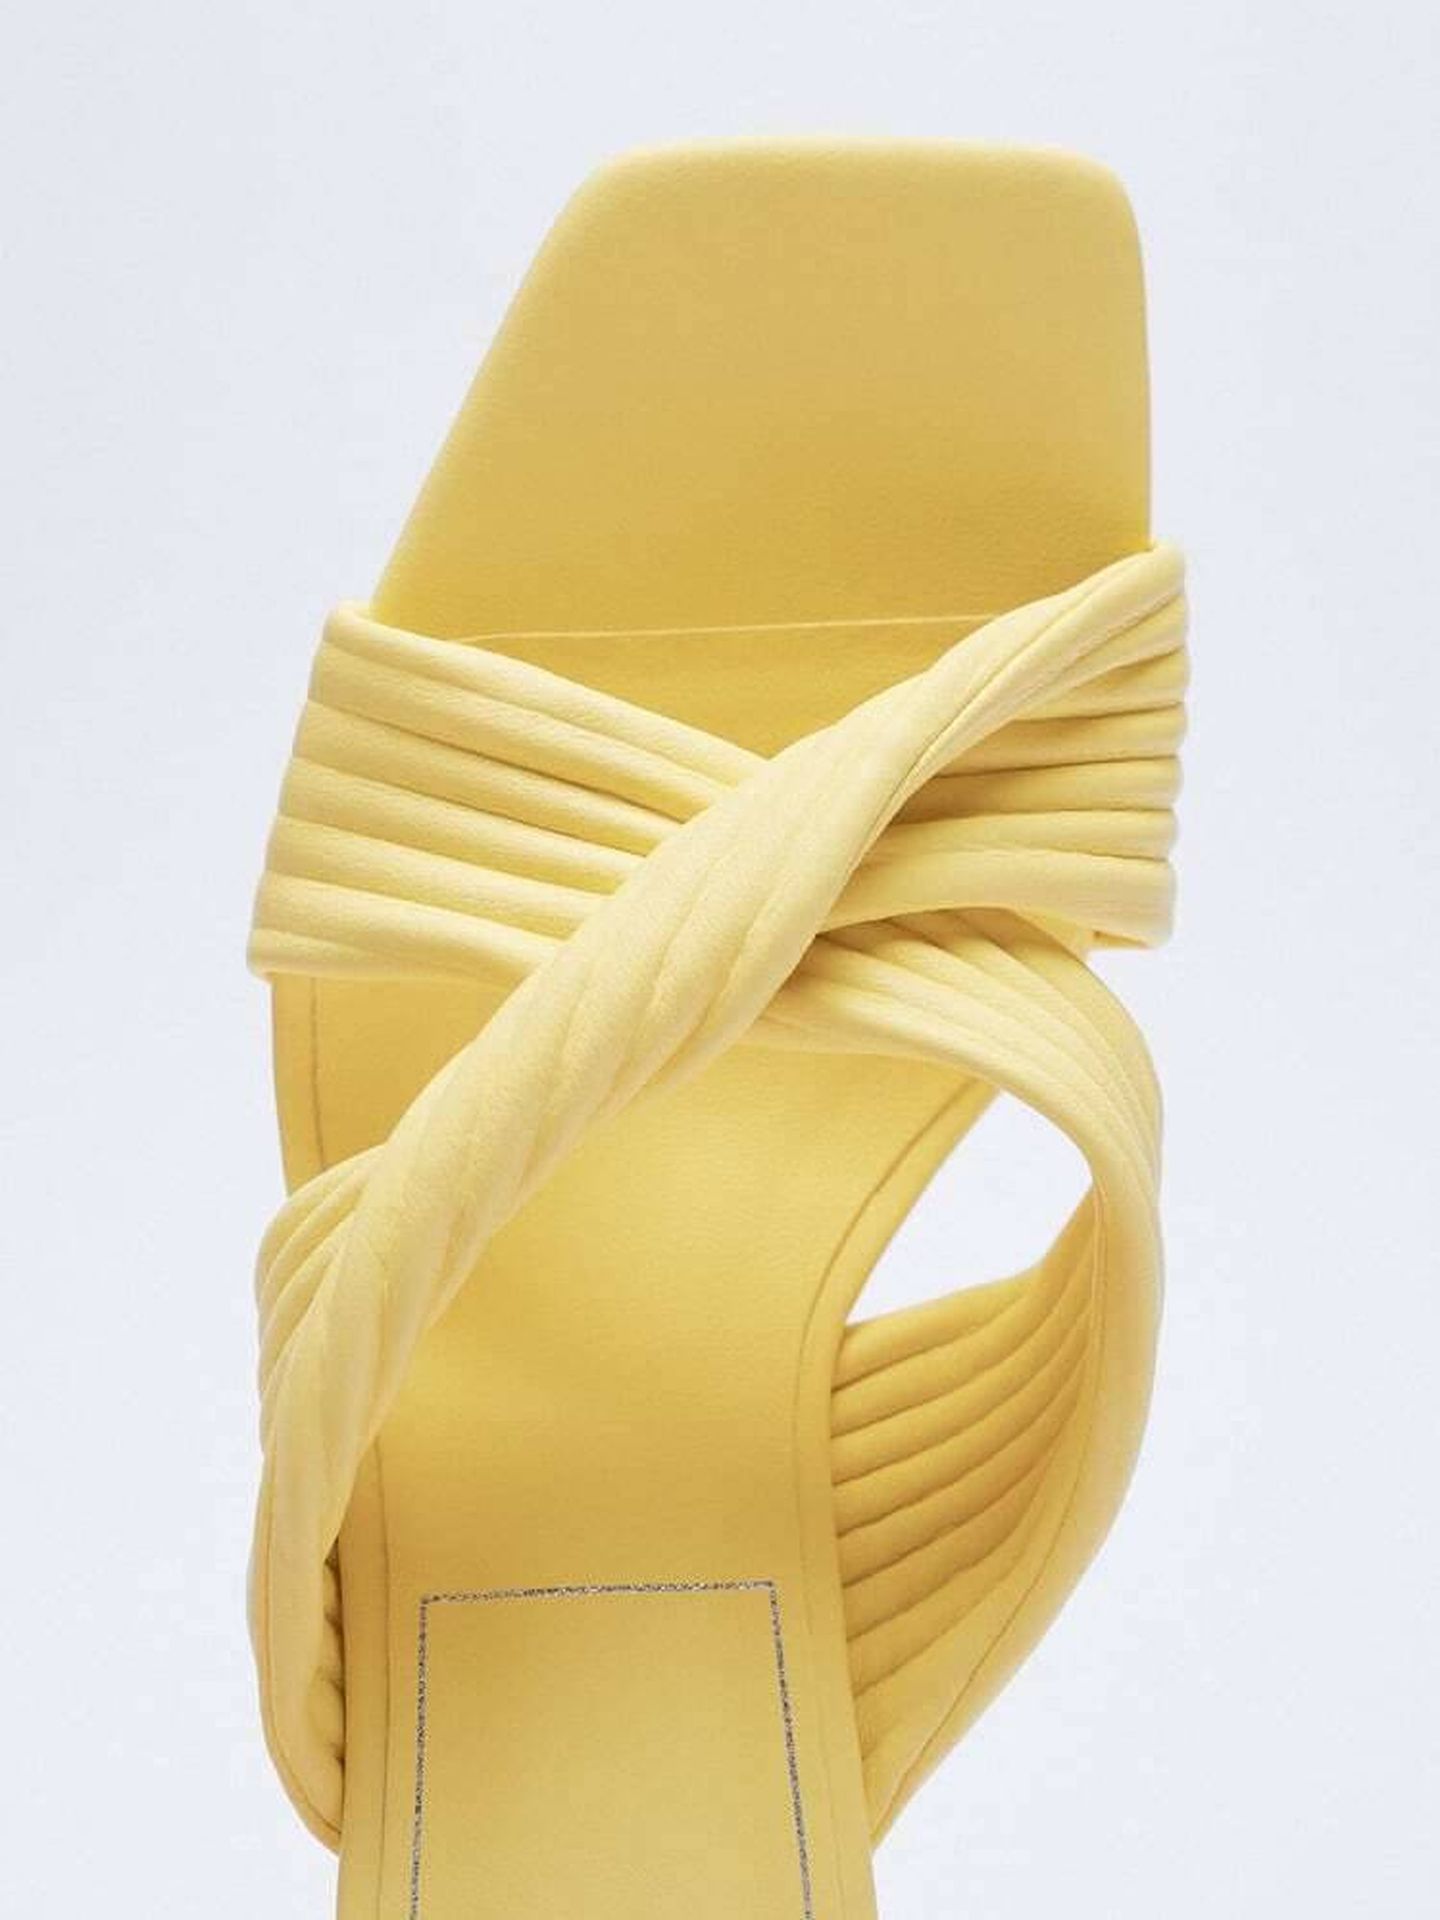 Las sandalias de Zara. (Cortesía)